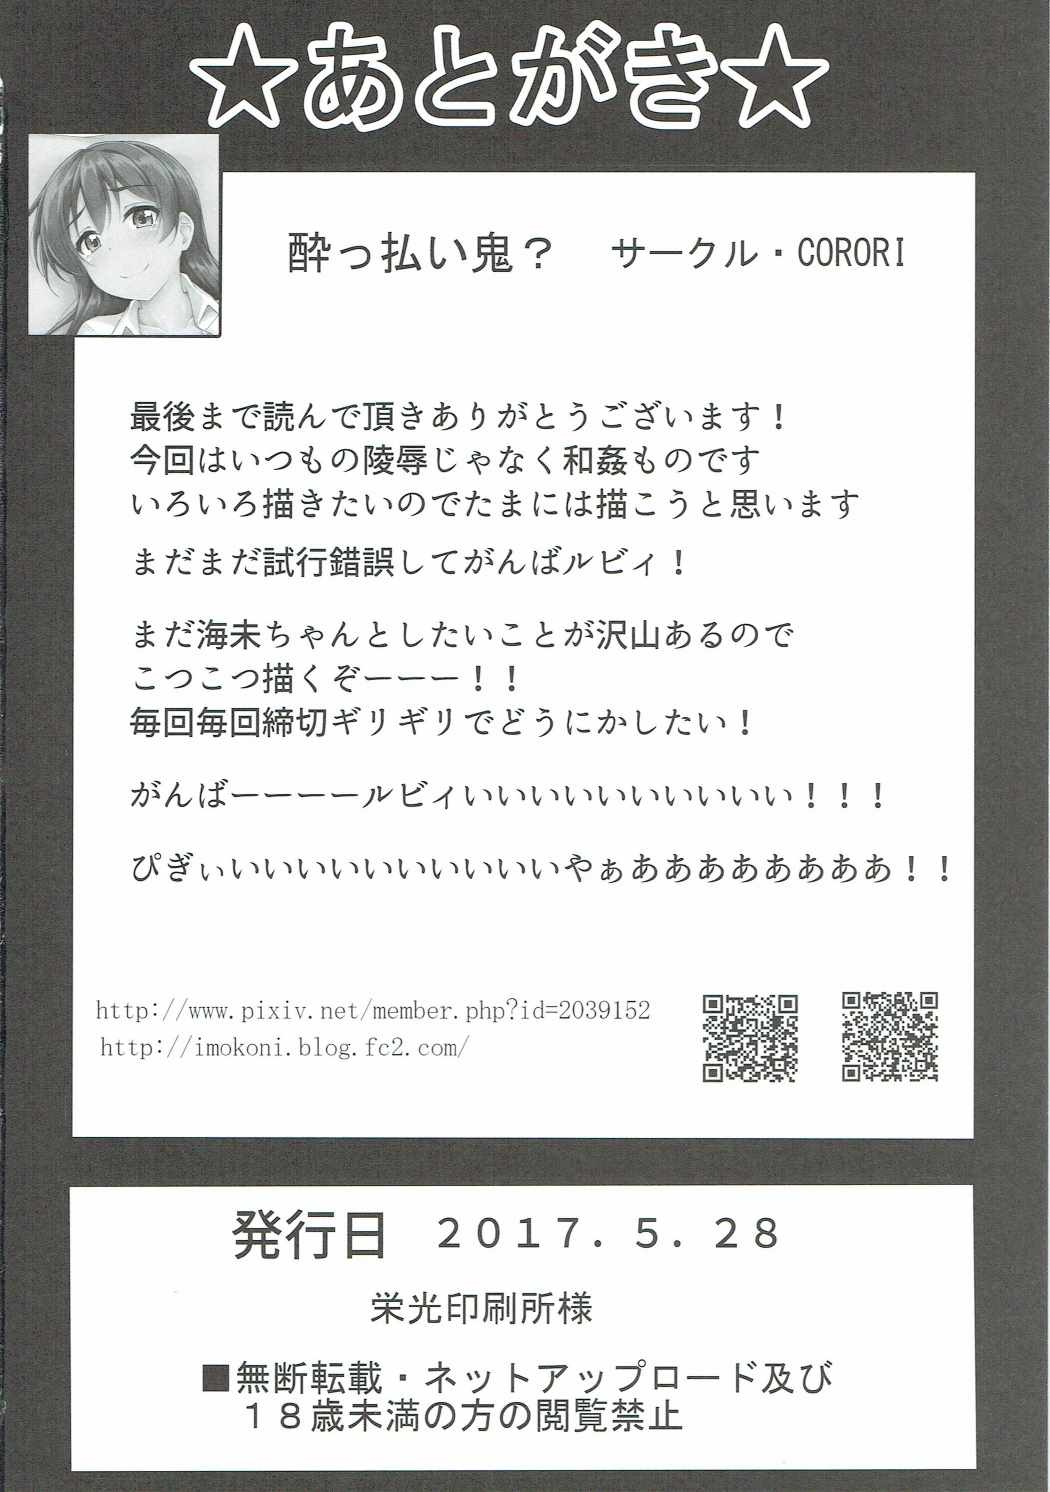 (僕らのラブライブ! 16) [corori (酔っ払い鬼?)] うみかんlove ~海未ちゃんとえっちする本! (ラブライブ!)